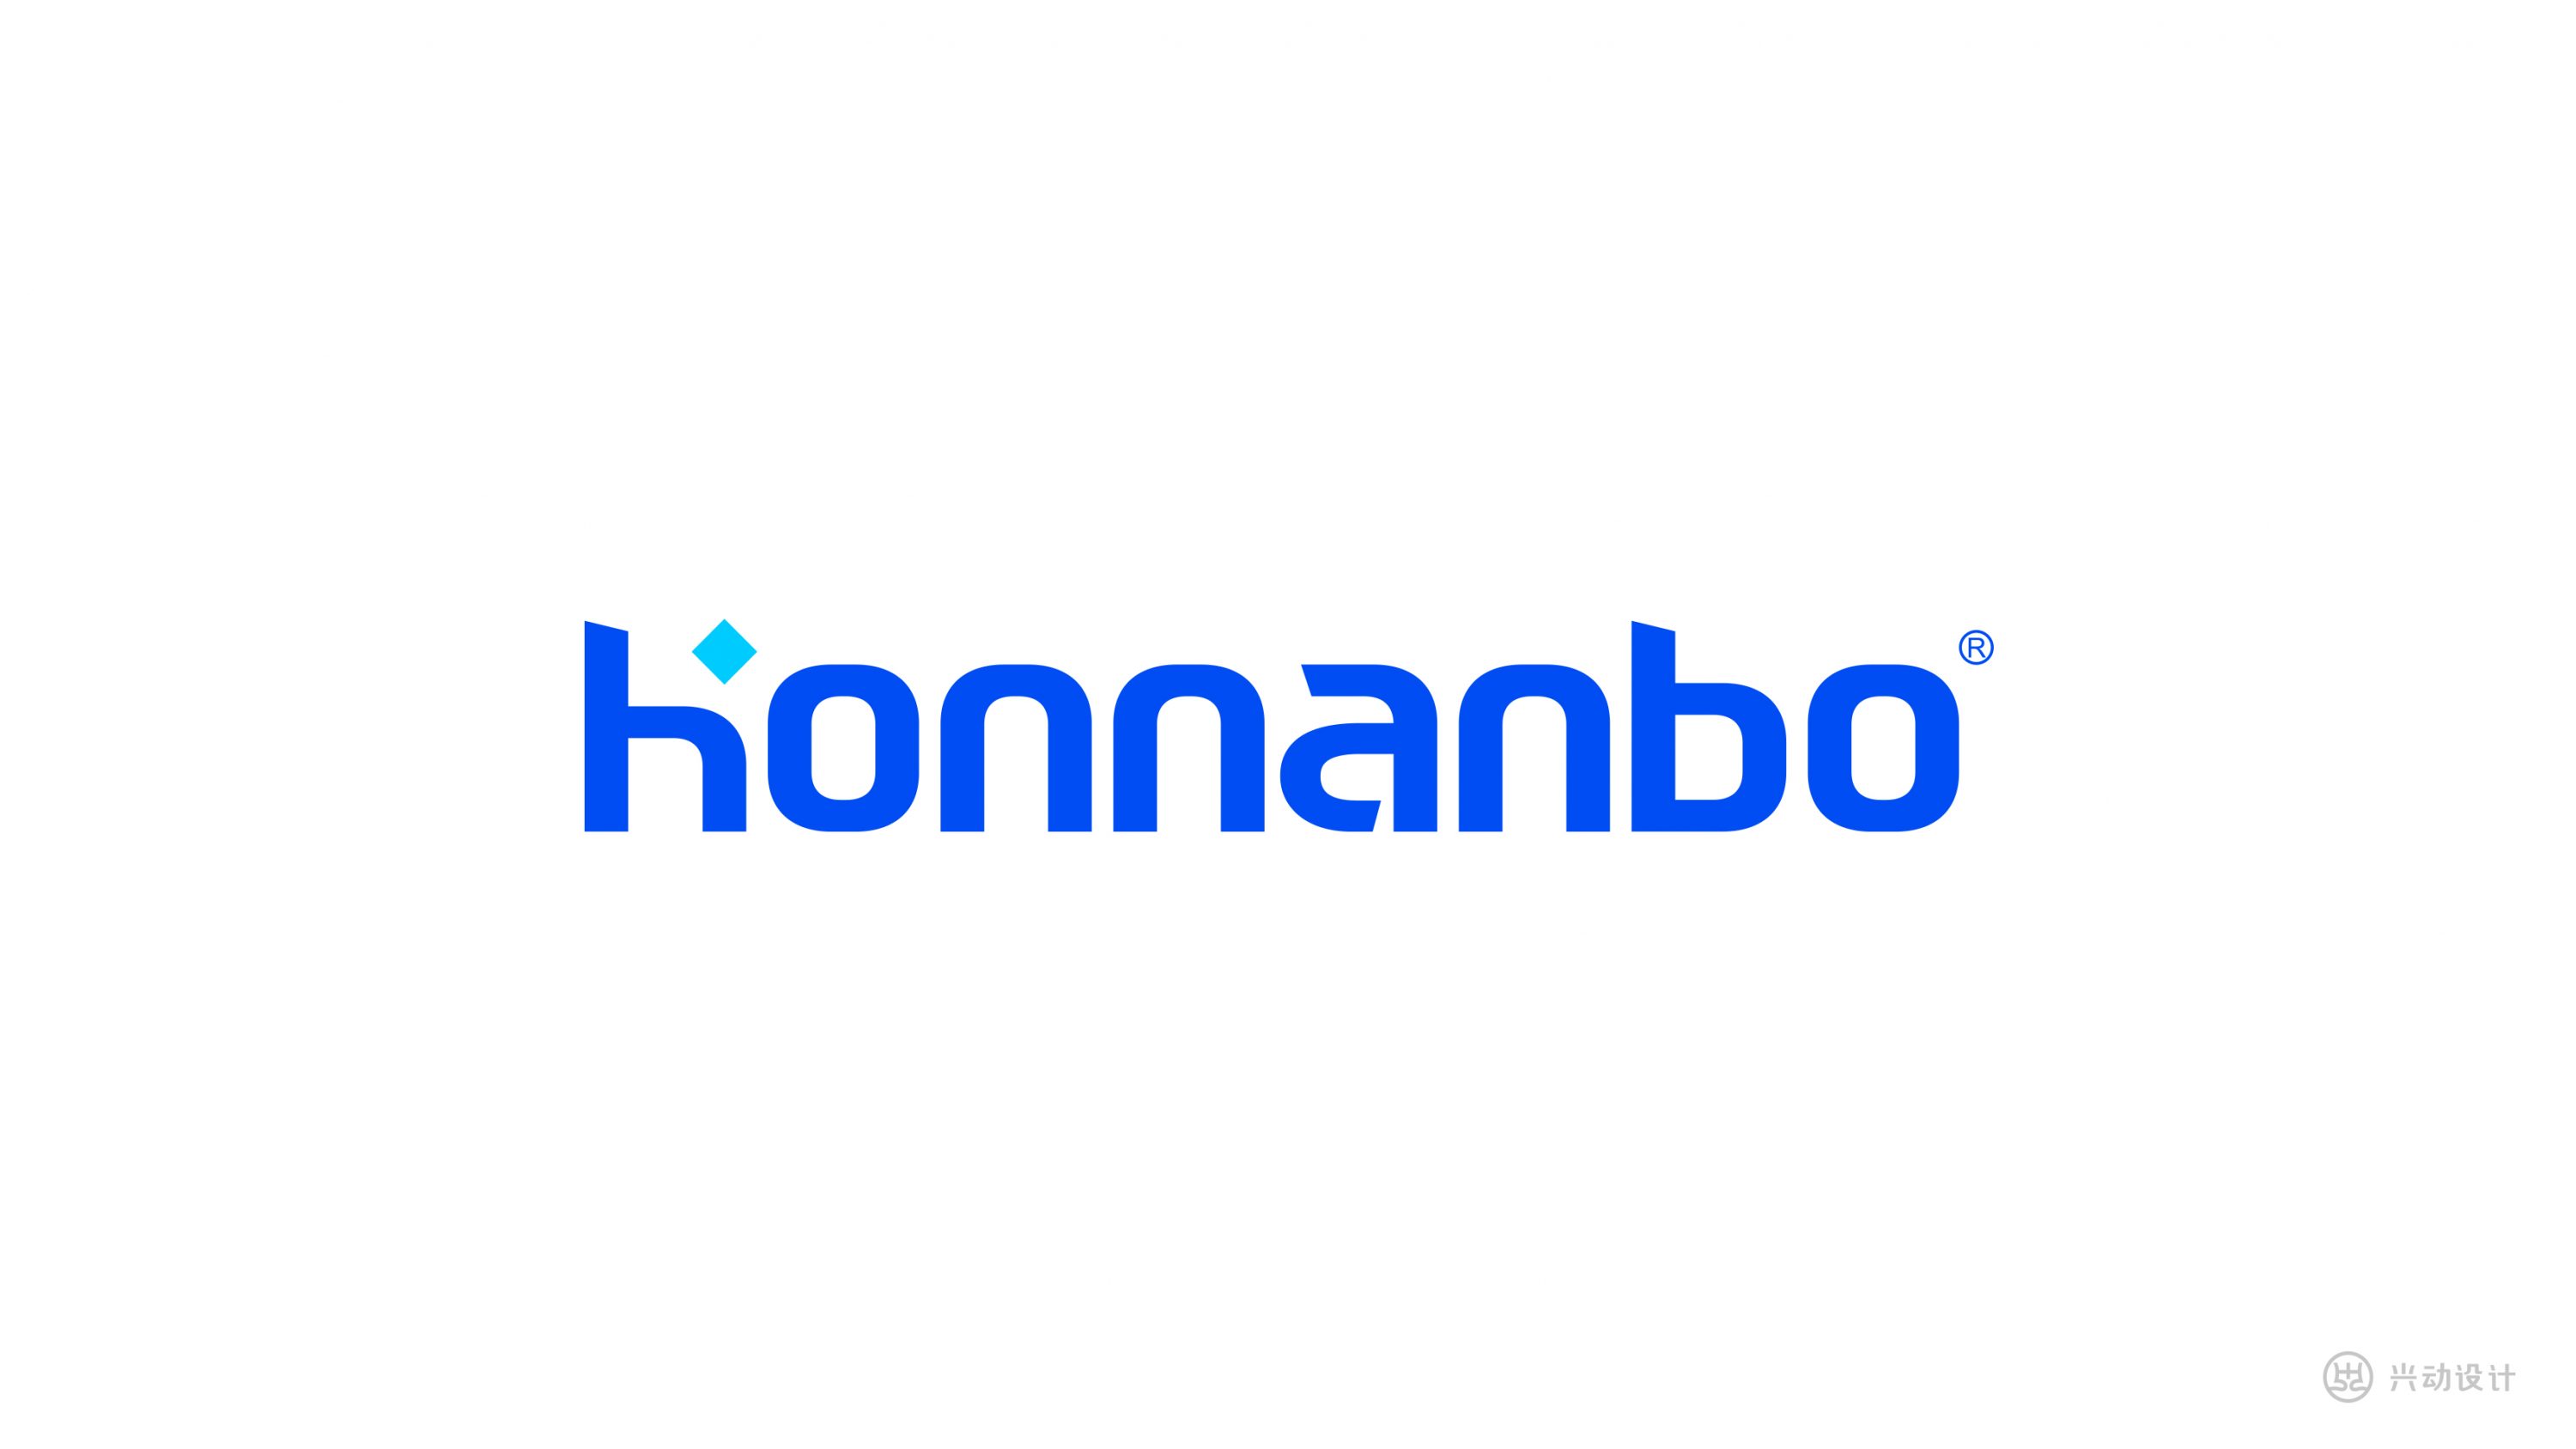 HONNANBO外贸品牌设计